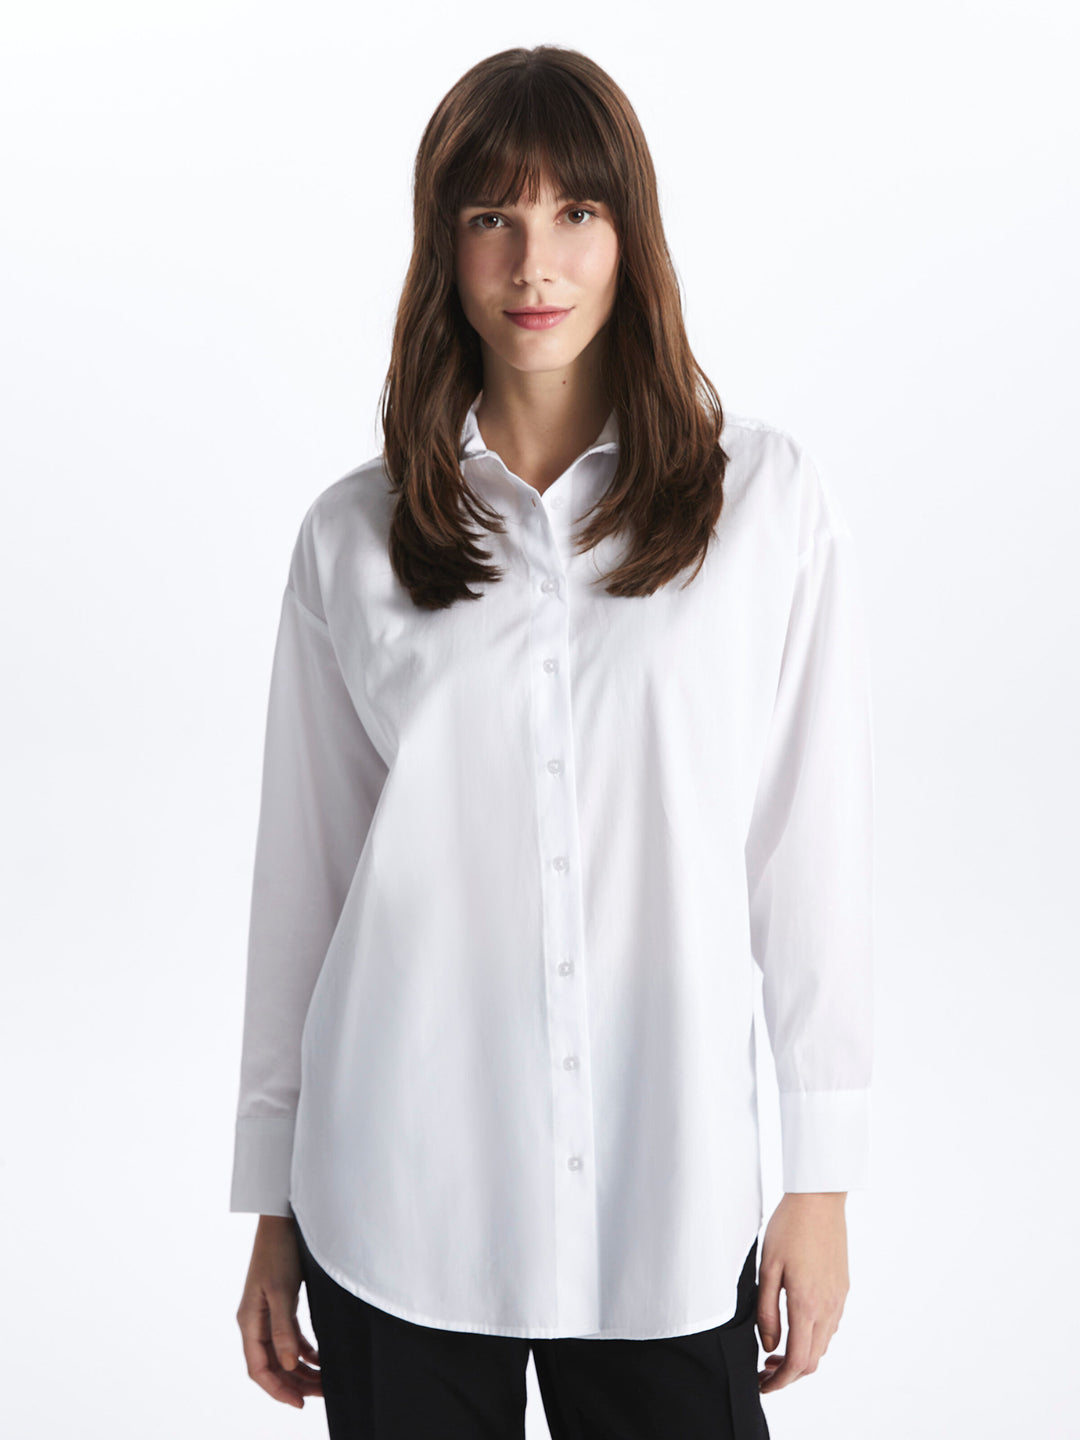 Self-Patterned Long Sleeve Oversize Women Shirt Tunic